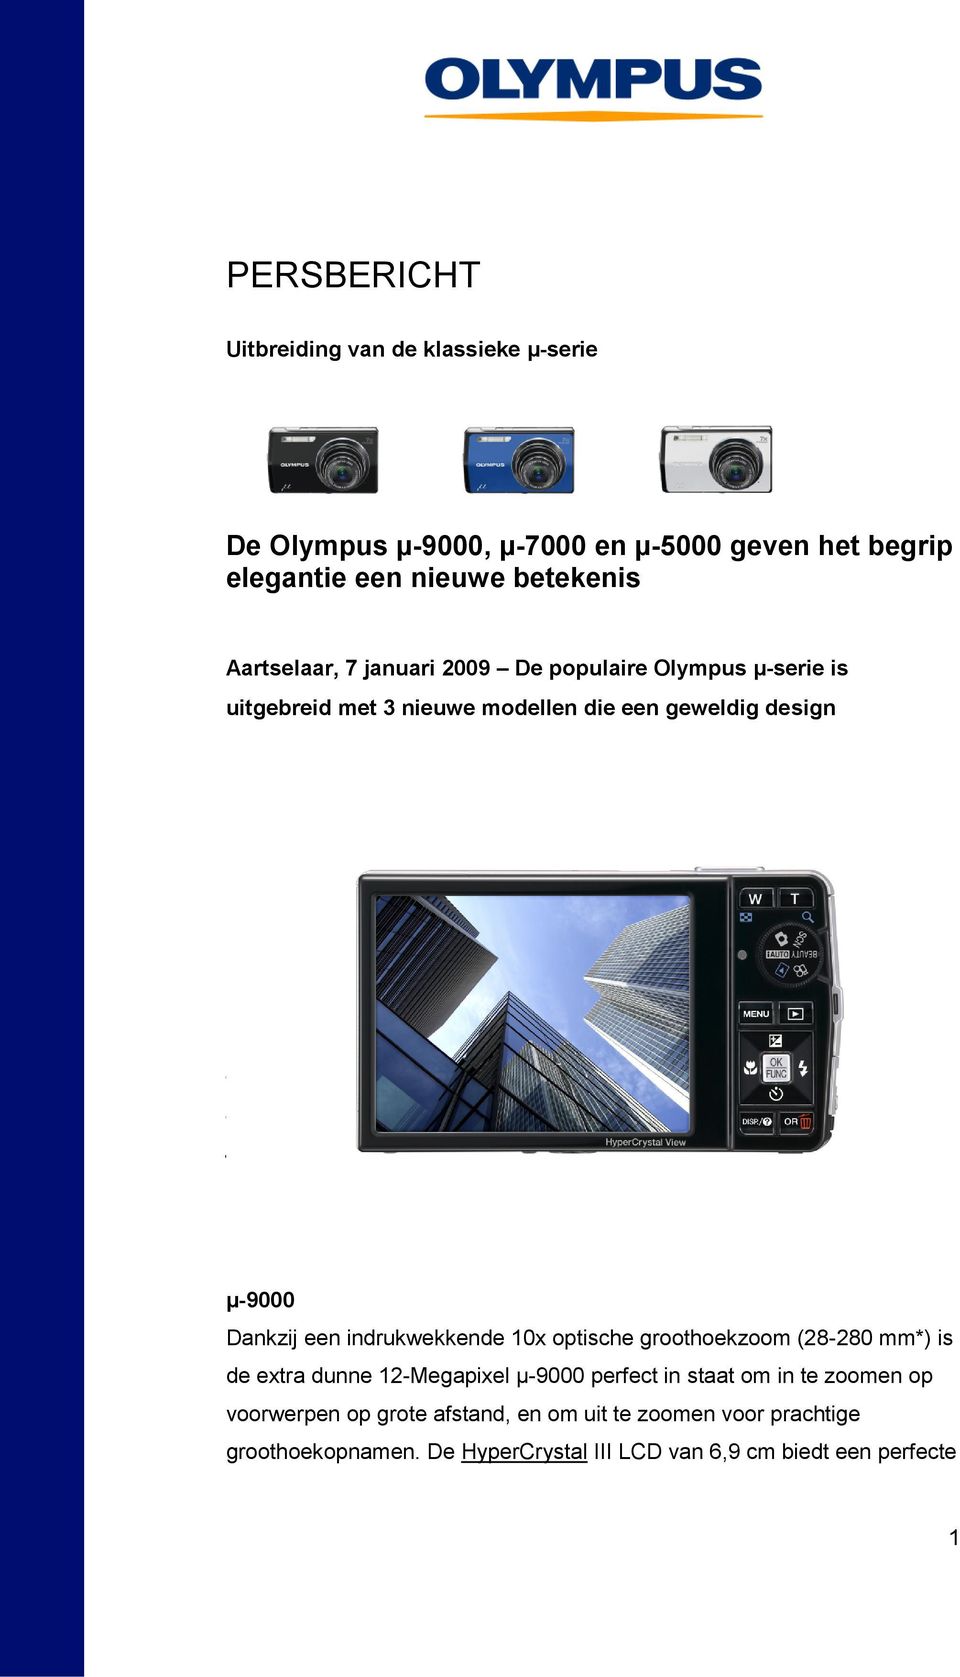 Met optische zoomlenzen van 5x bij de µ-5000, 7x bij de µ-7000 en 10x bij de µ-9000 worden deze nieuwe camera's uit de legendarische Olympus µ-serie evenals hun voorgangers gekenmerkt door een